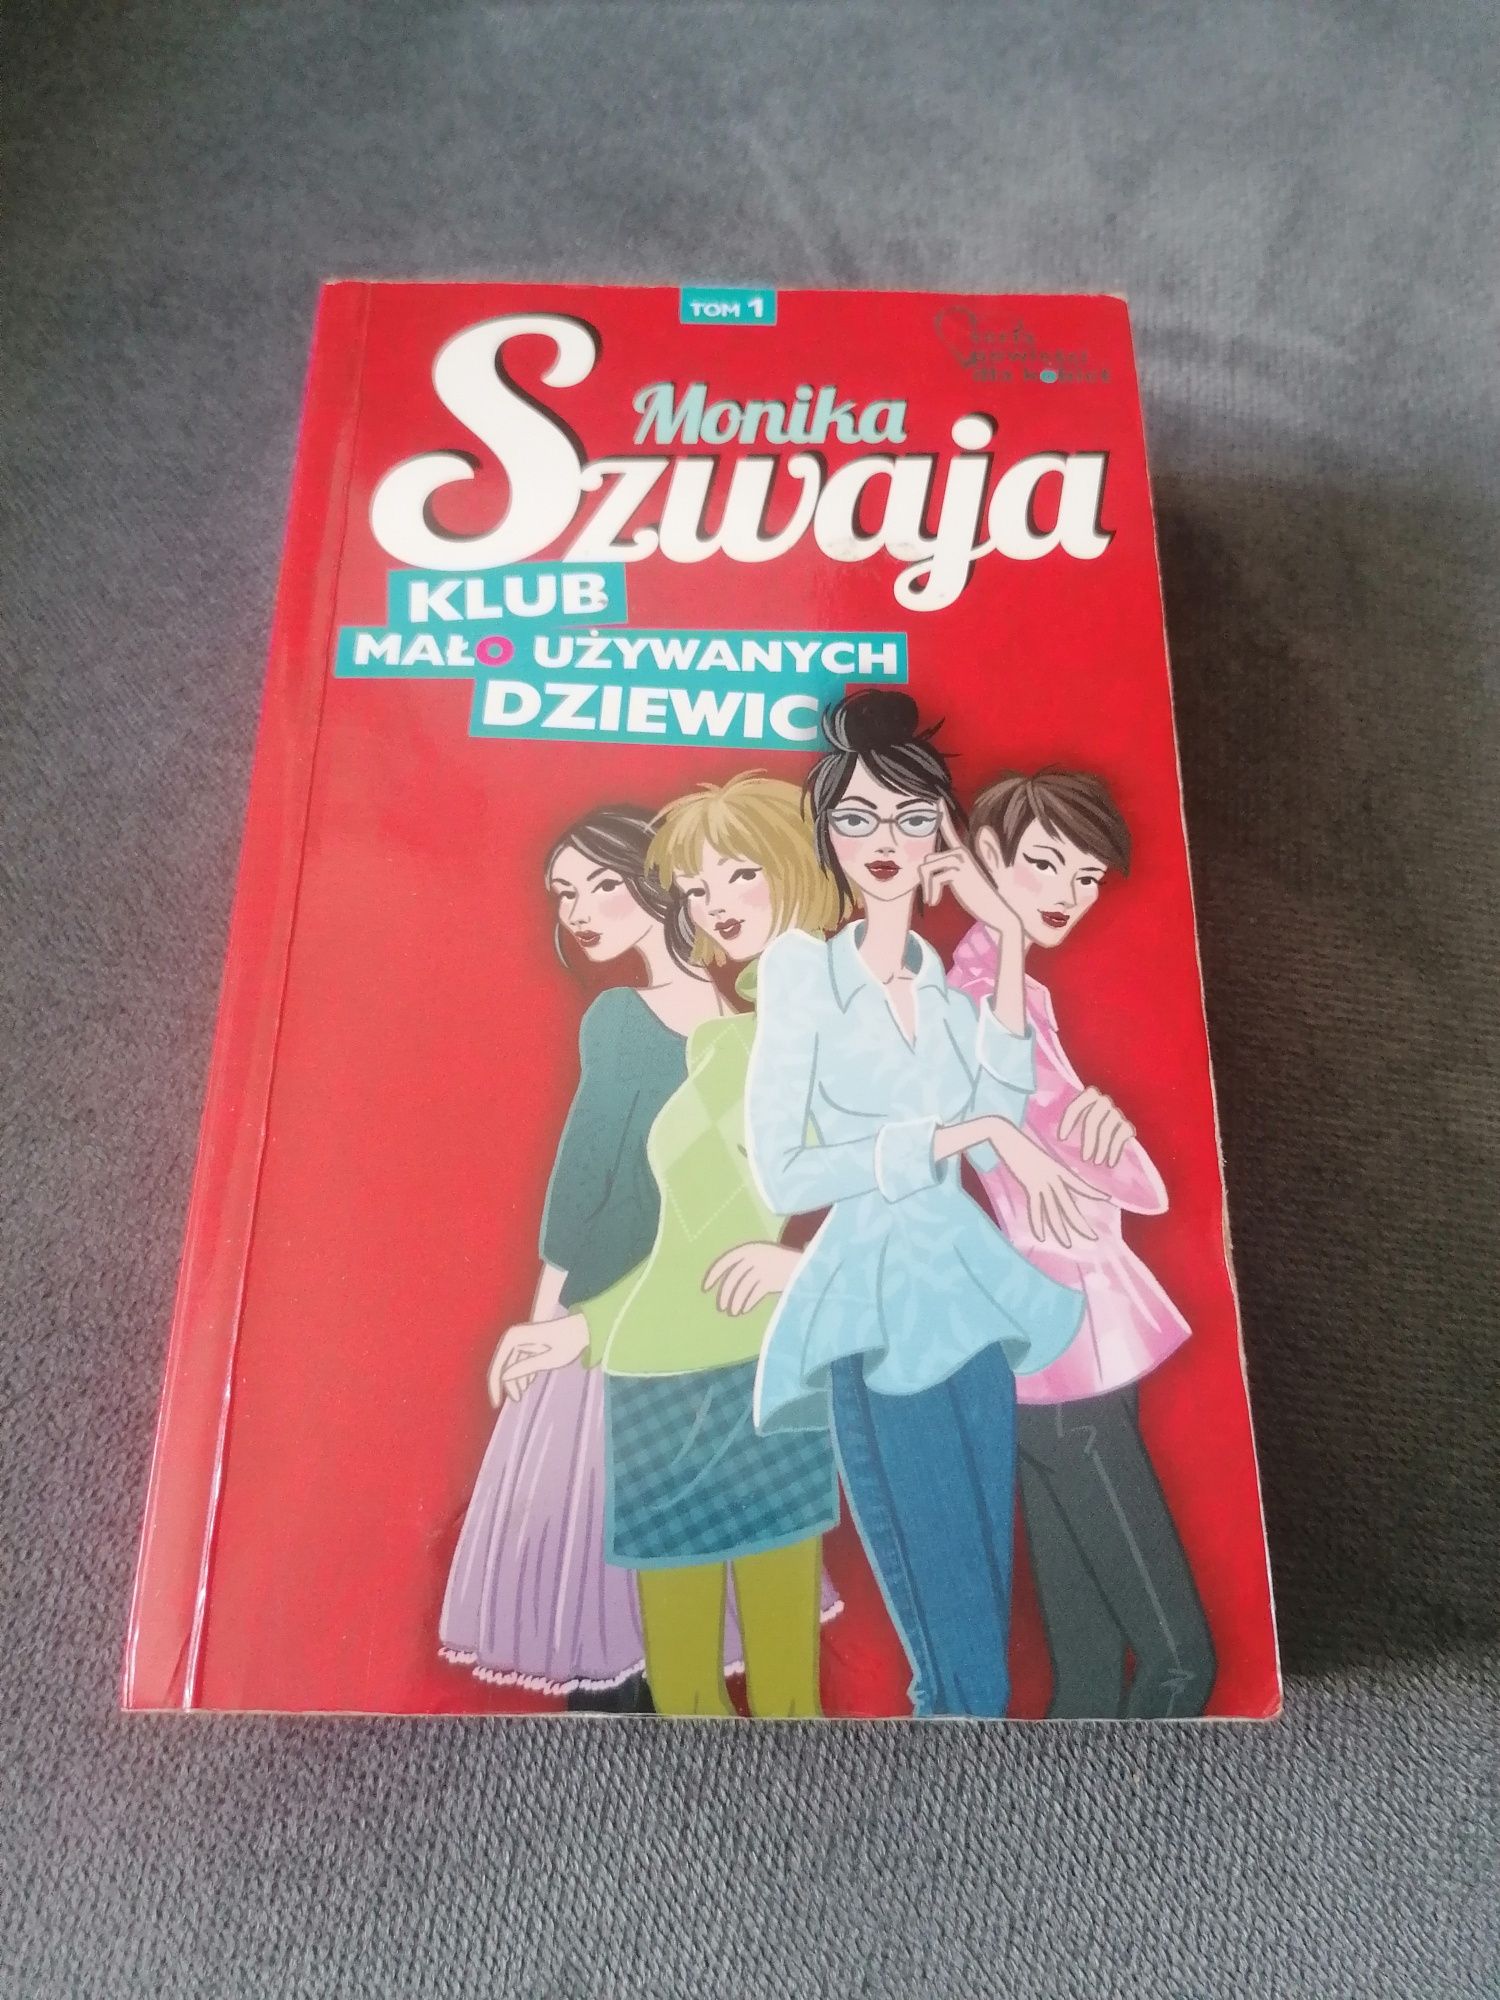 Monika Szwaja "Klub mało używanych dziewic"